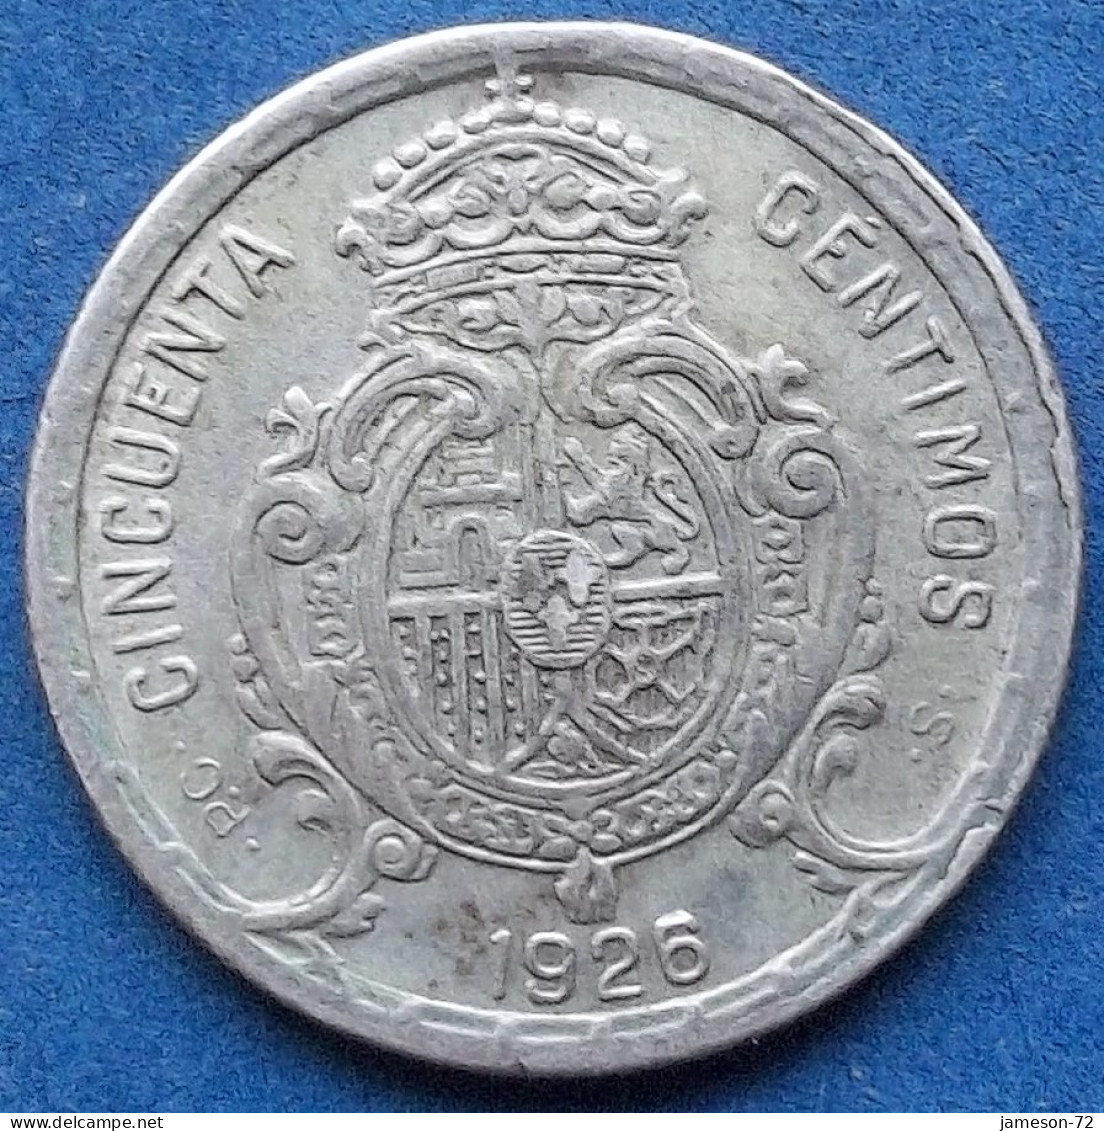 SPAIN - Silver 50 Centimos 1926 PC S KM# 741 Alfonso XIII (1886-1931) - Edelweiss Coins - Erstausgaben